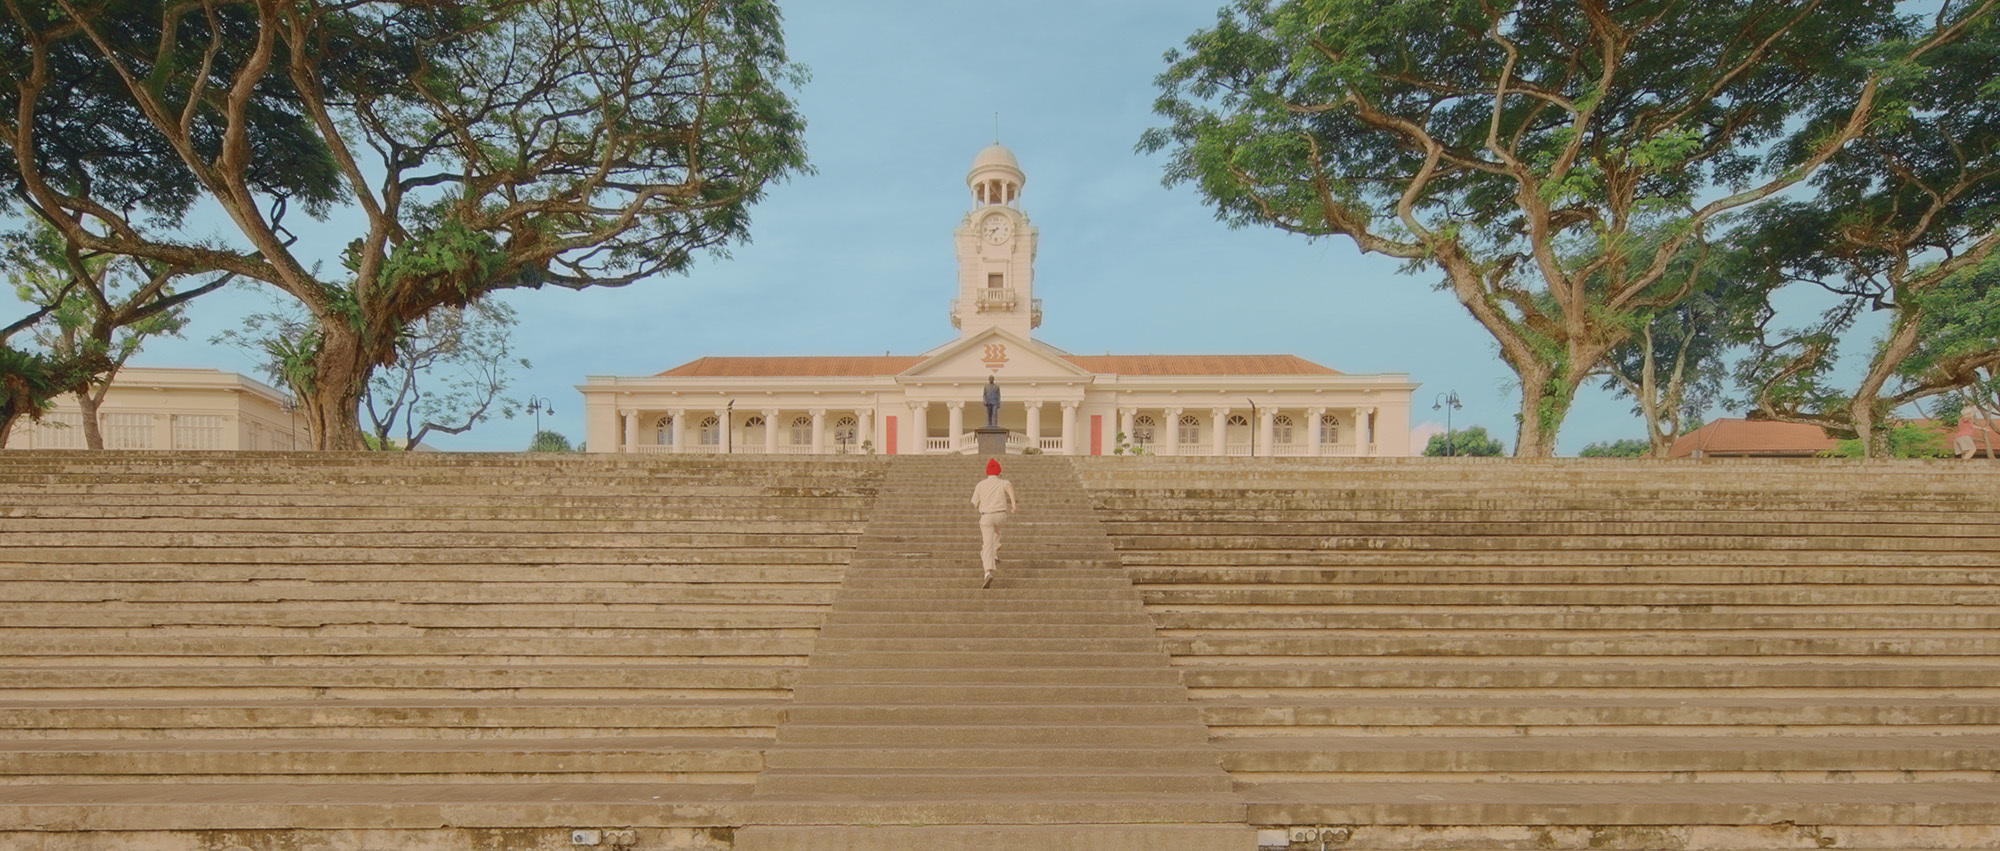 Новый архитектурный фильм, вдохновленный Уэсом Андерсоном, посвящен искусственной среде Сингапура